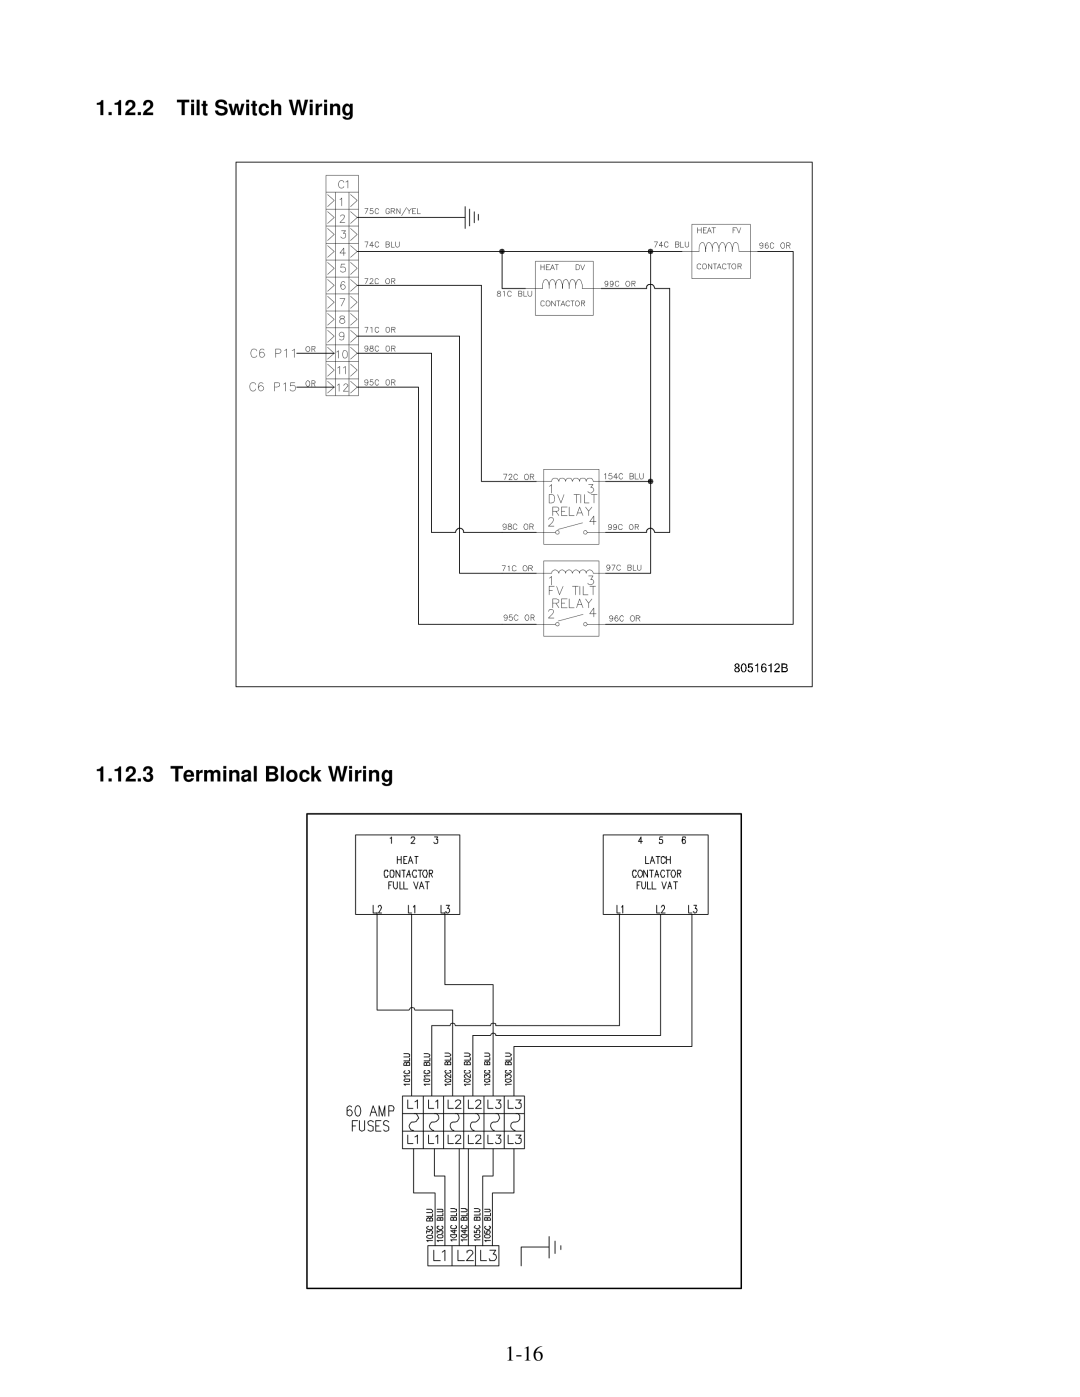 Frymaster 8196428 manual Tilt Switch Wiring Terminal Block Wiring 